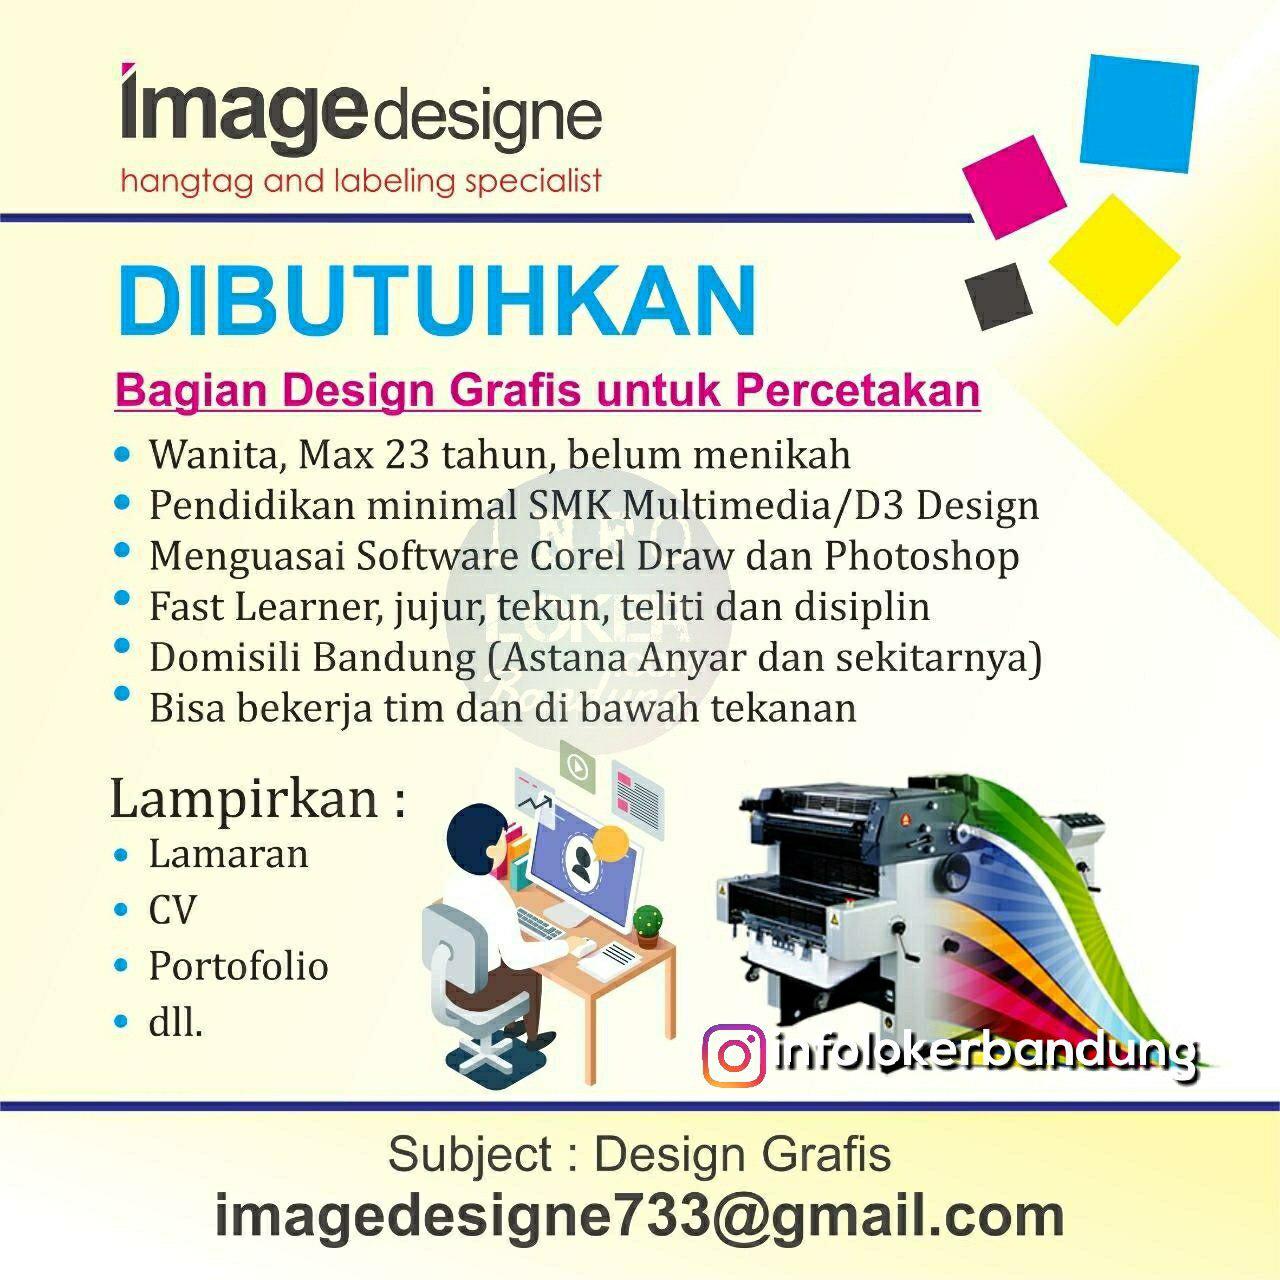  Lowongan  Kerja  Design  Grafis Image Designe Bandung 